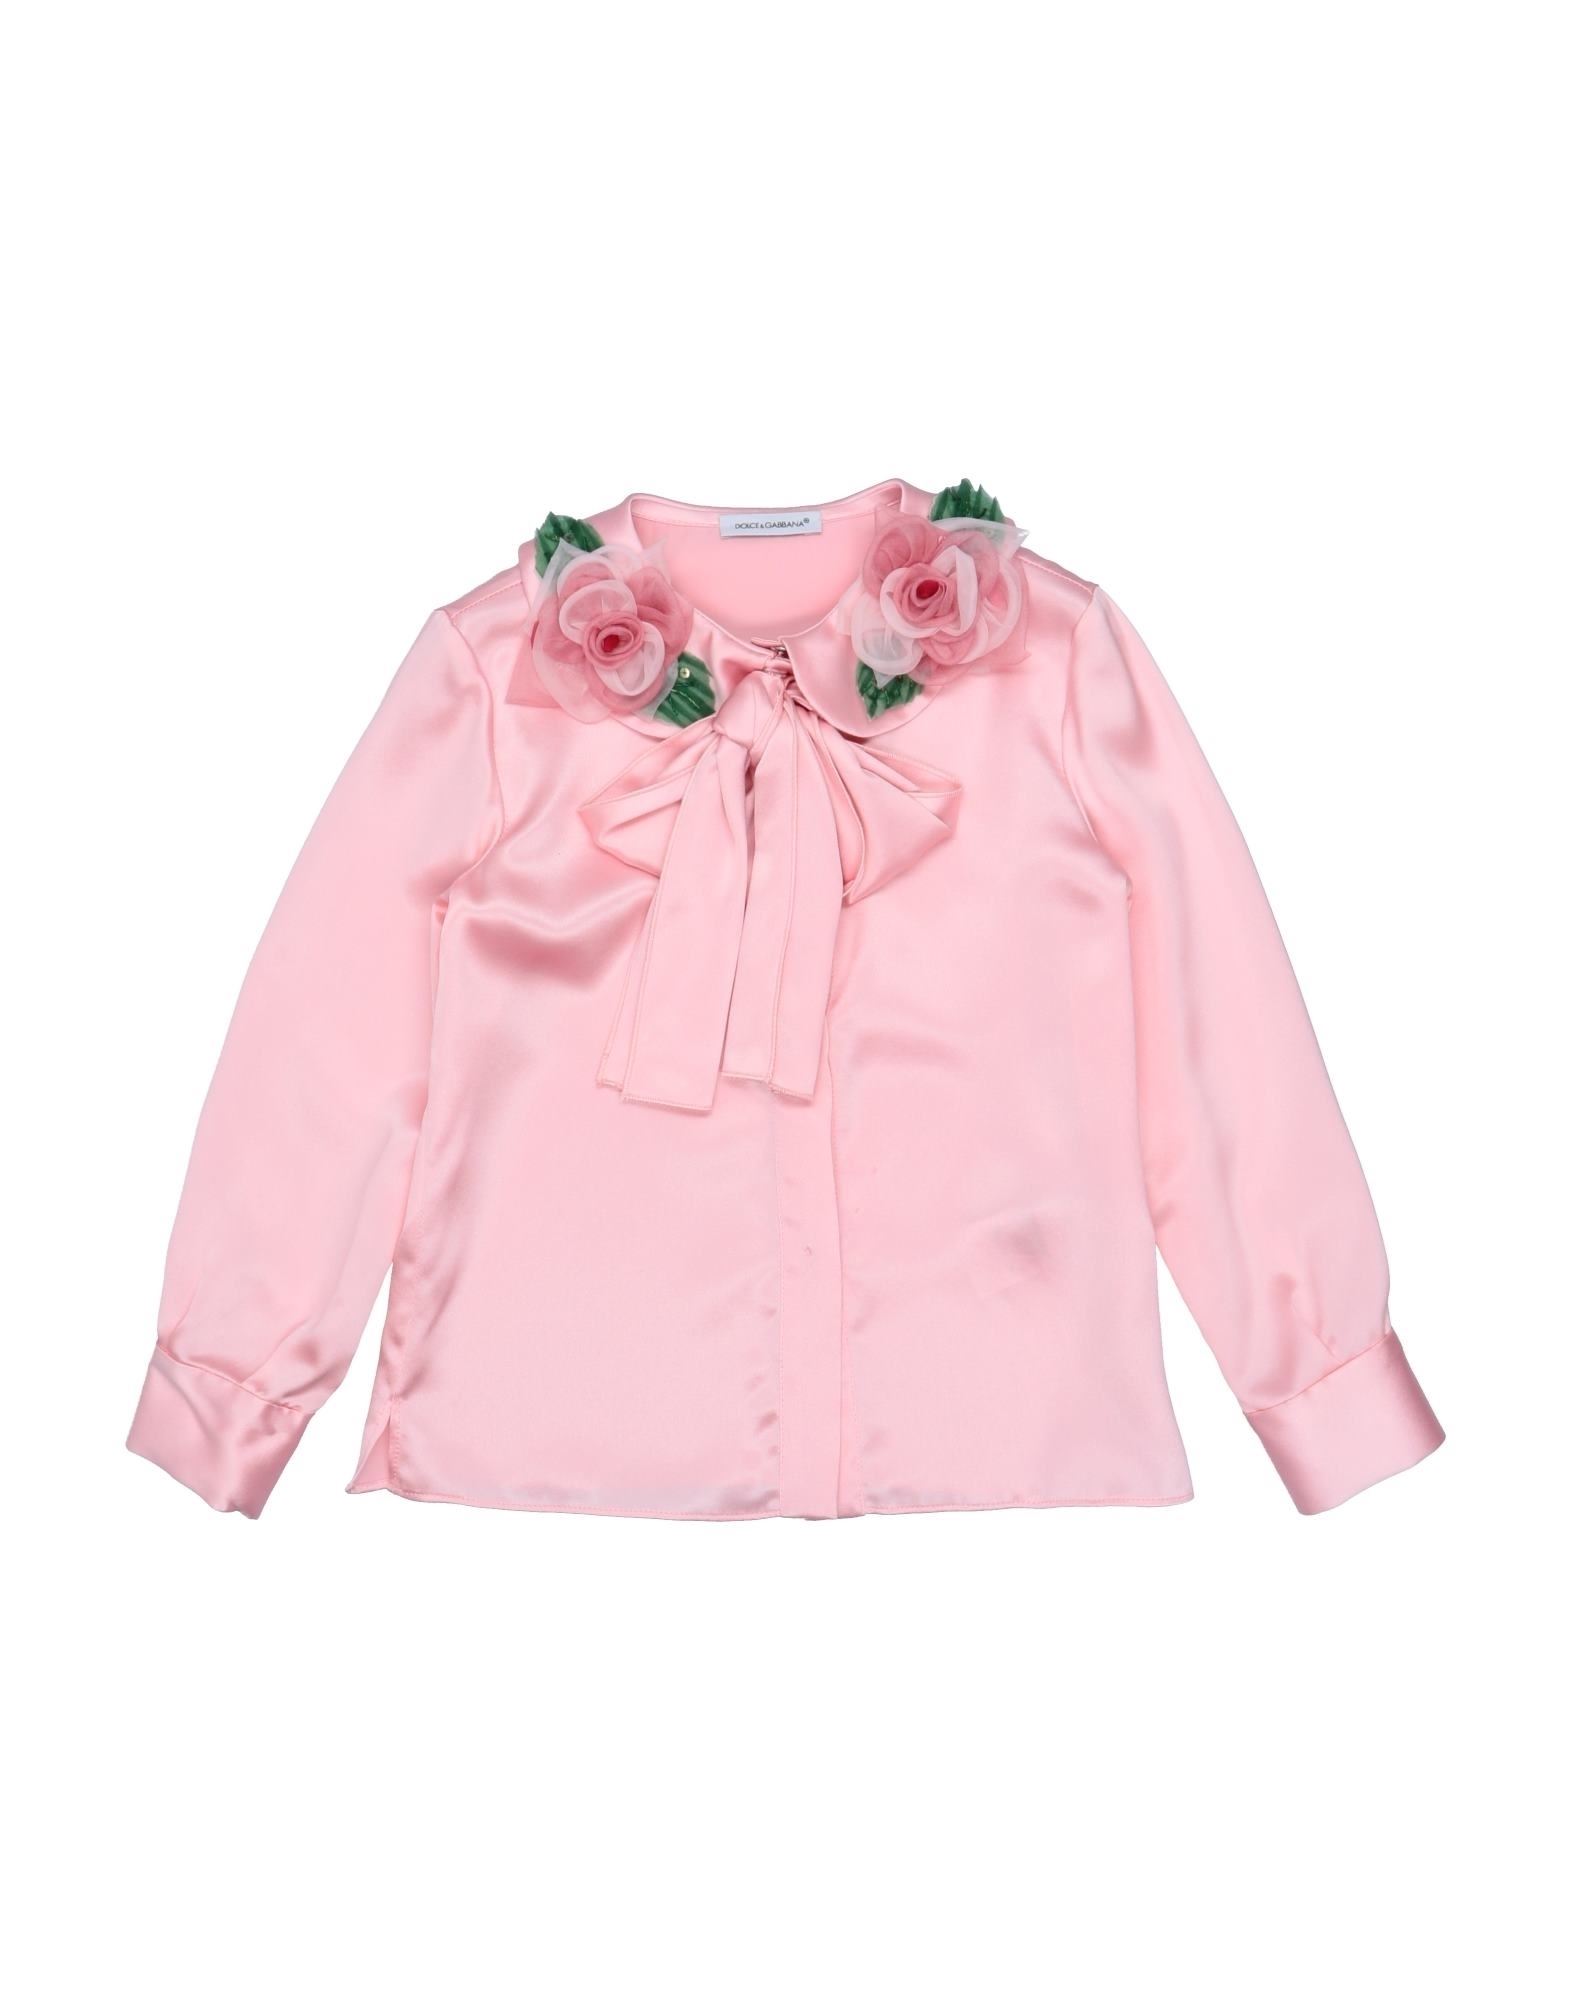 Dolce & Gabbana Kids' Shirts In Pink